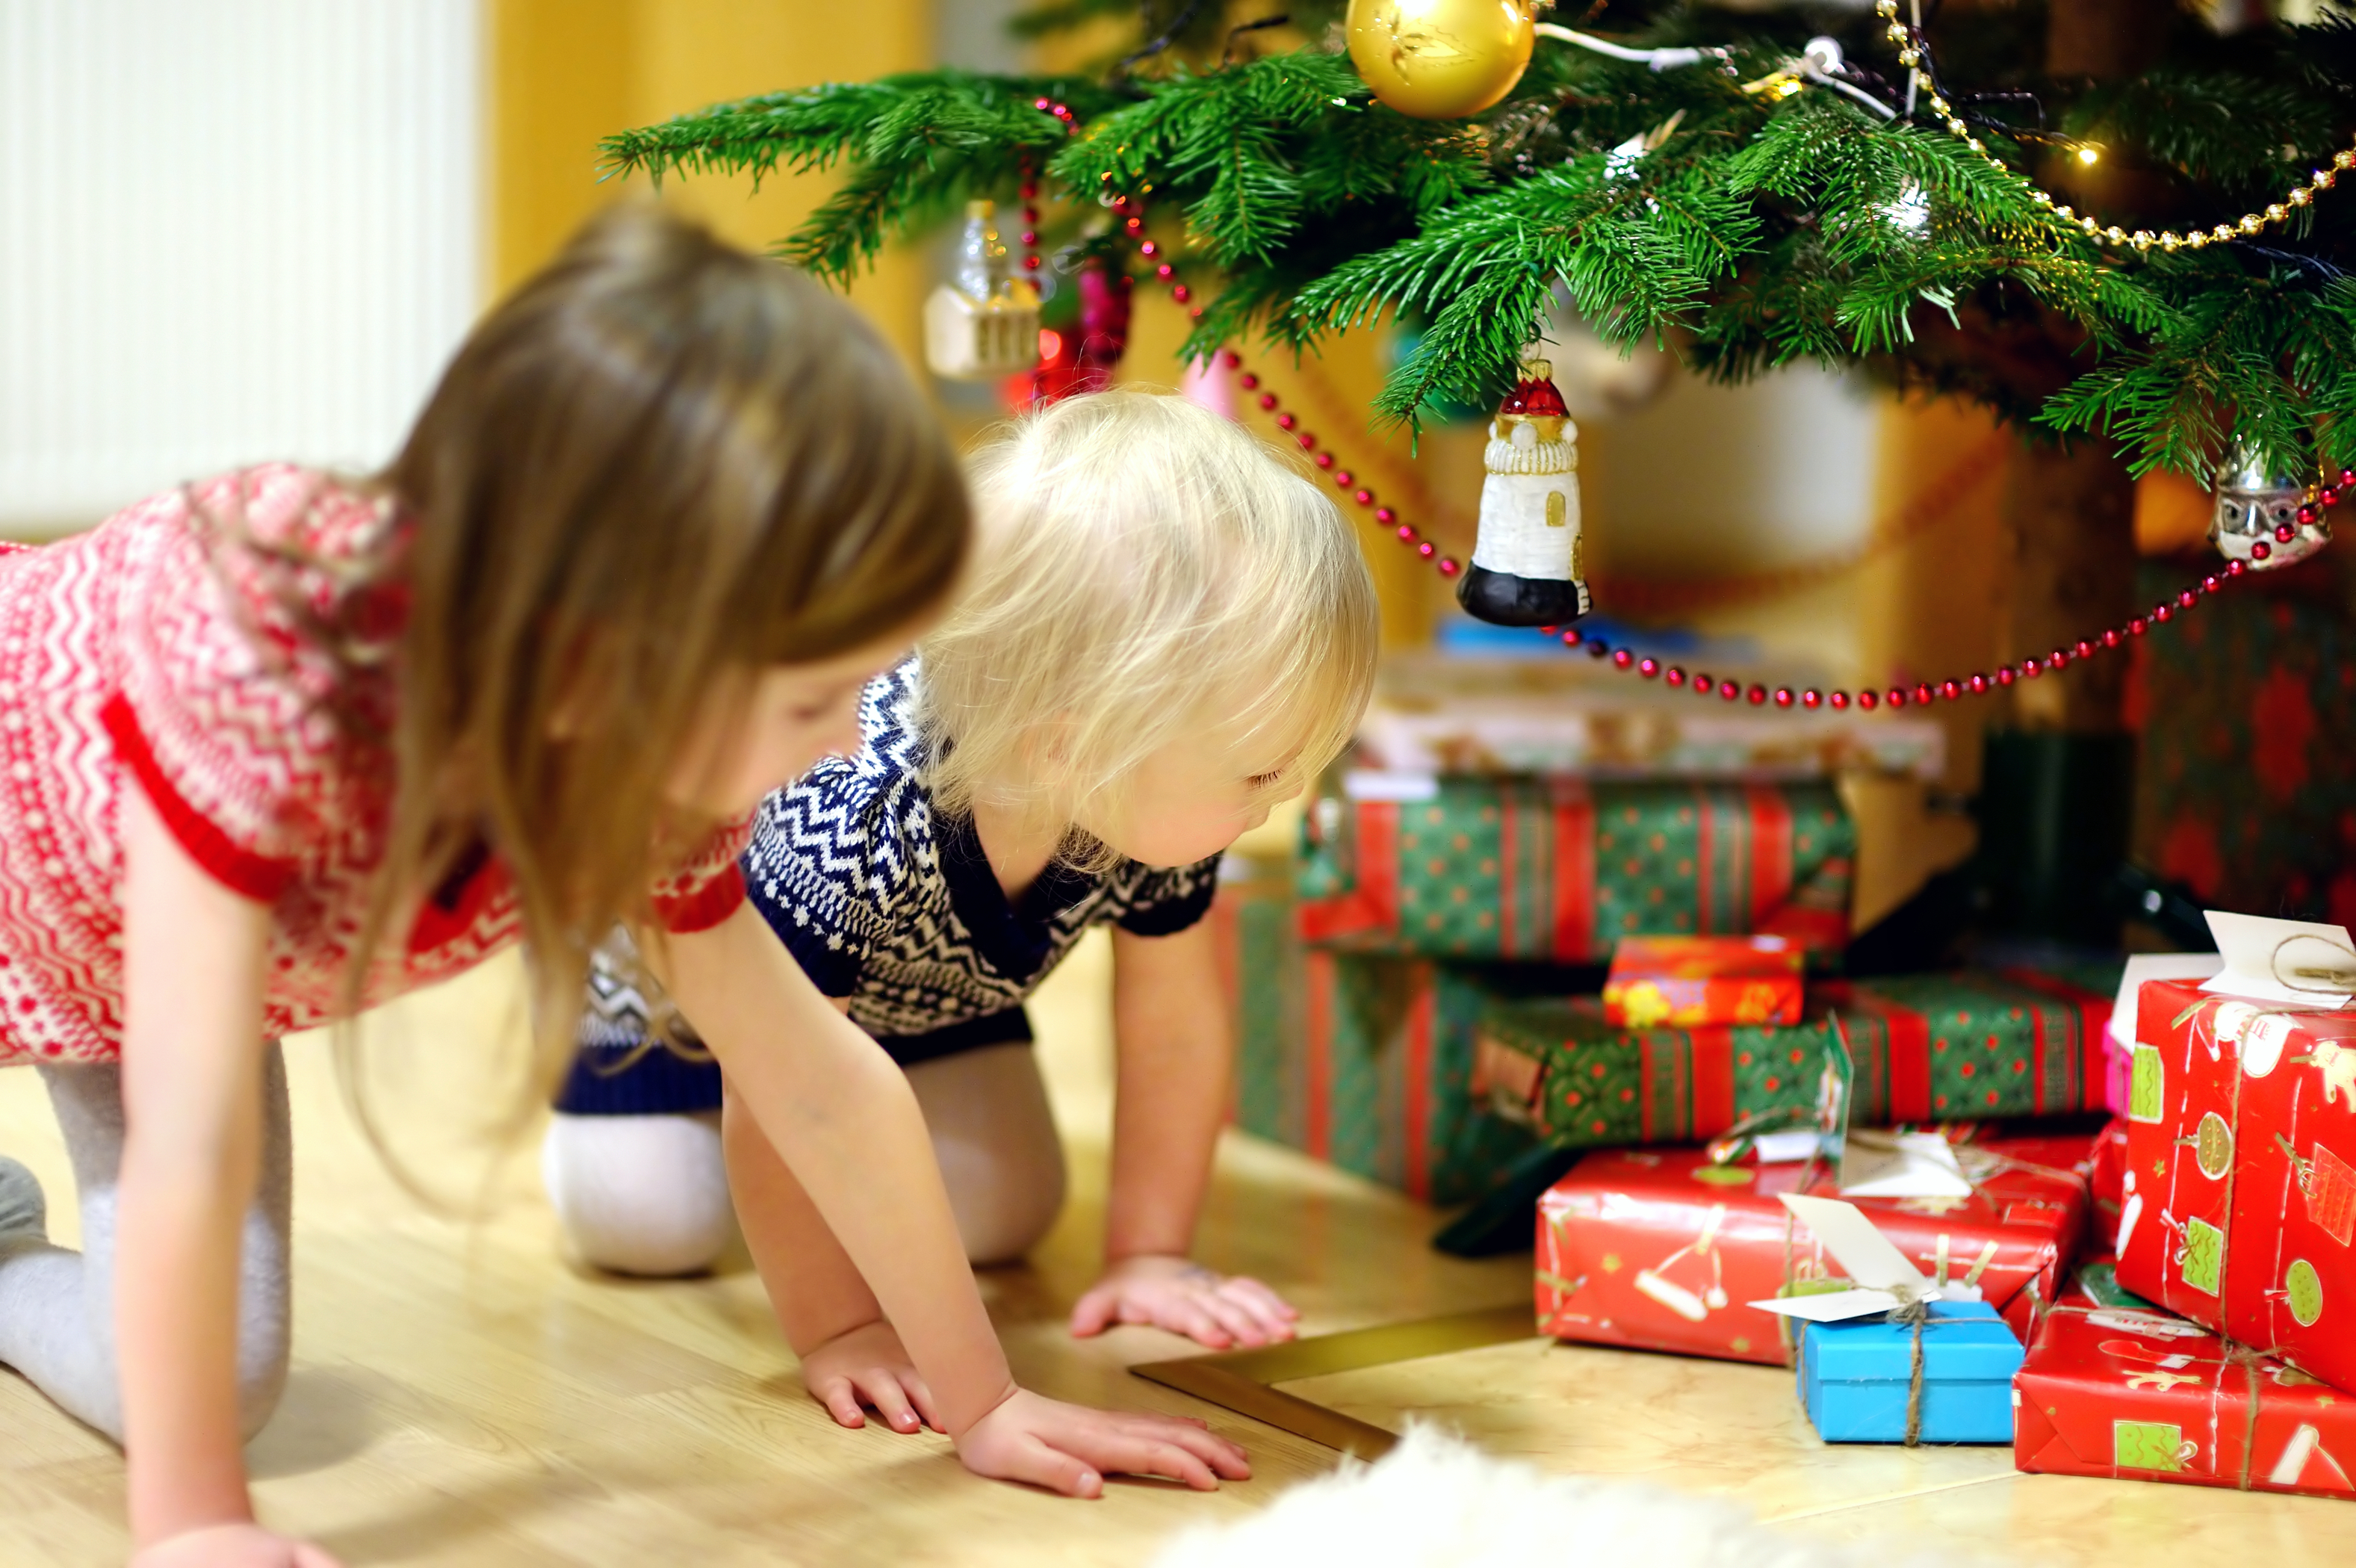 Des enfants regardent des cadeaux | Source : Shuttertsock